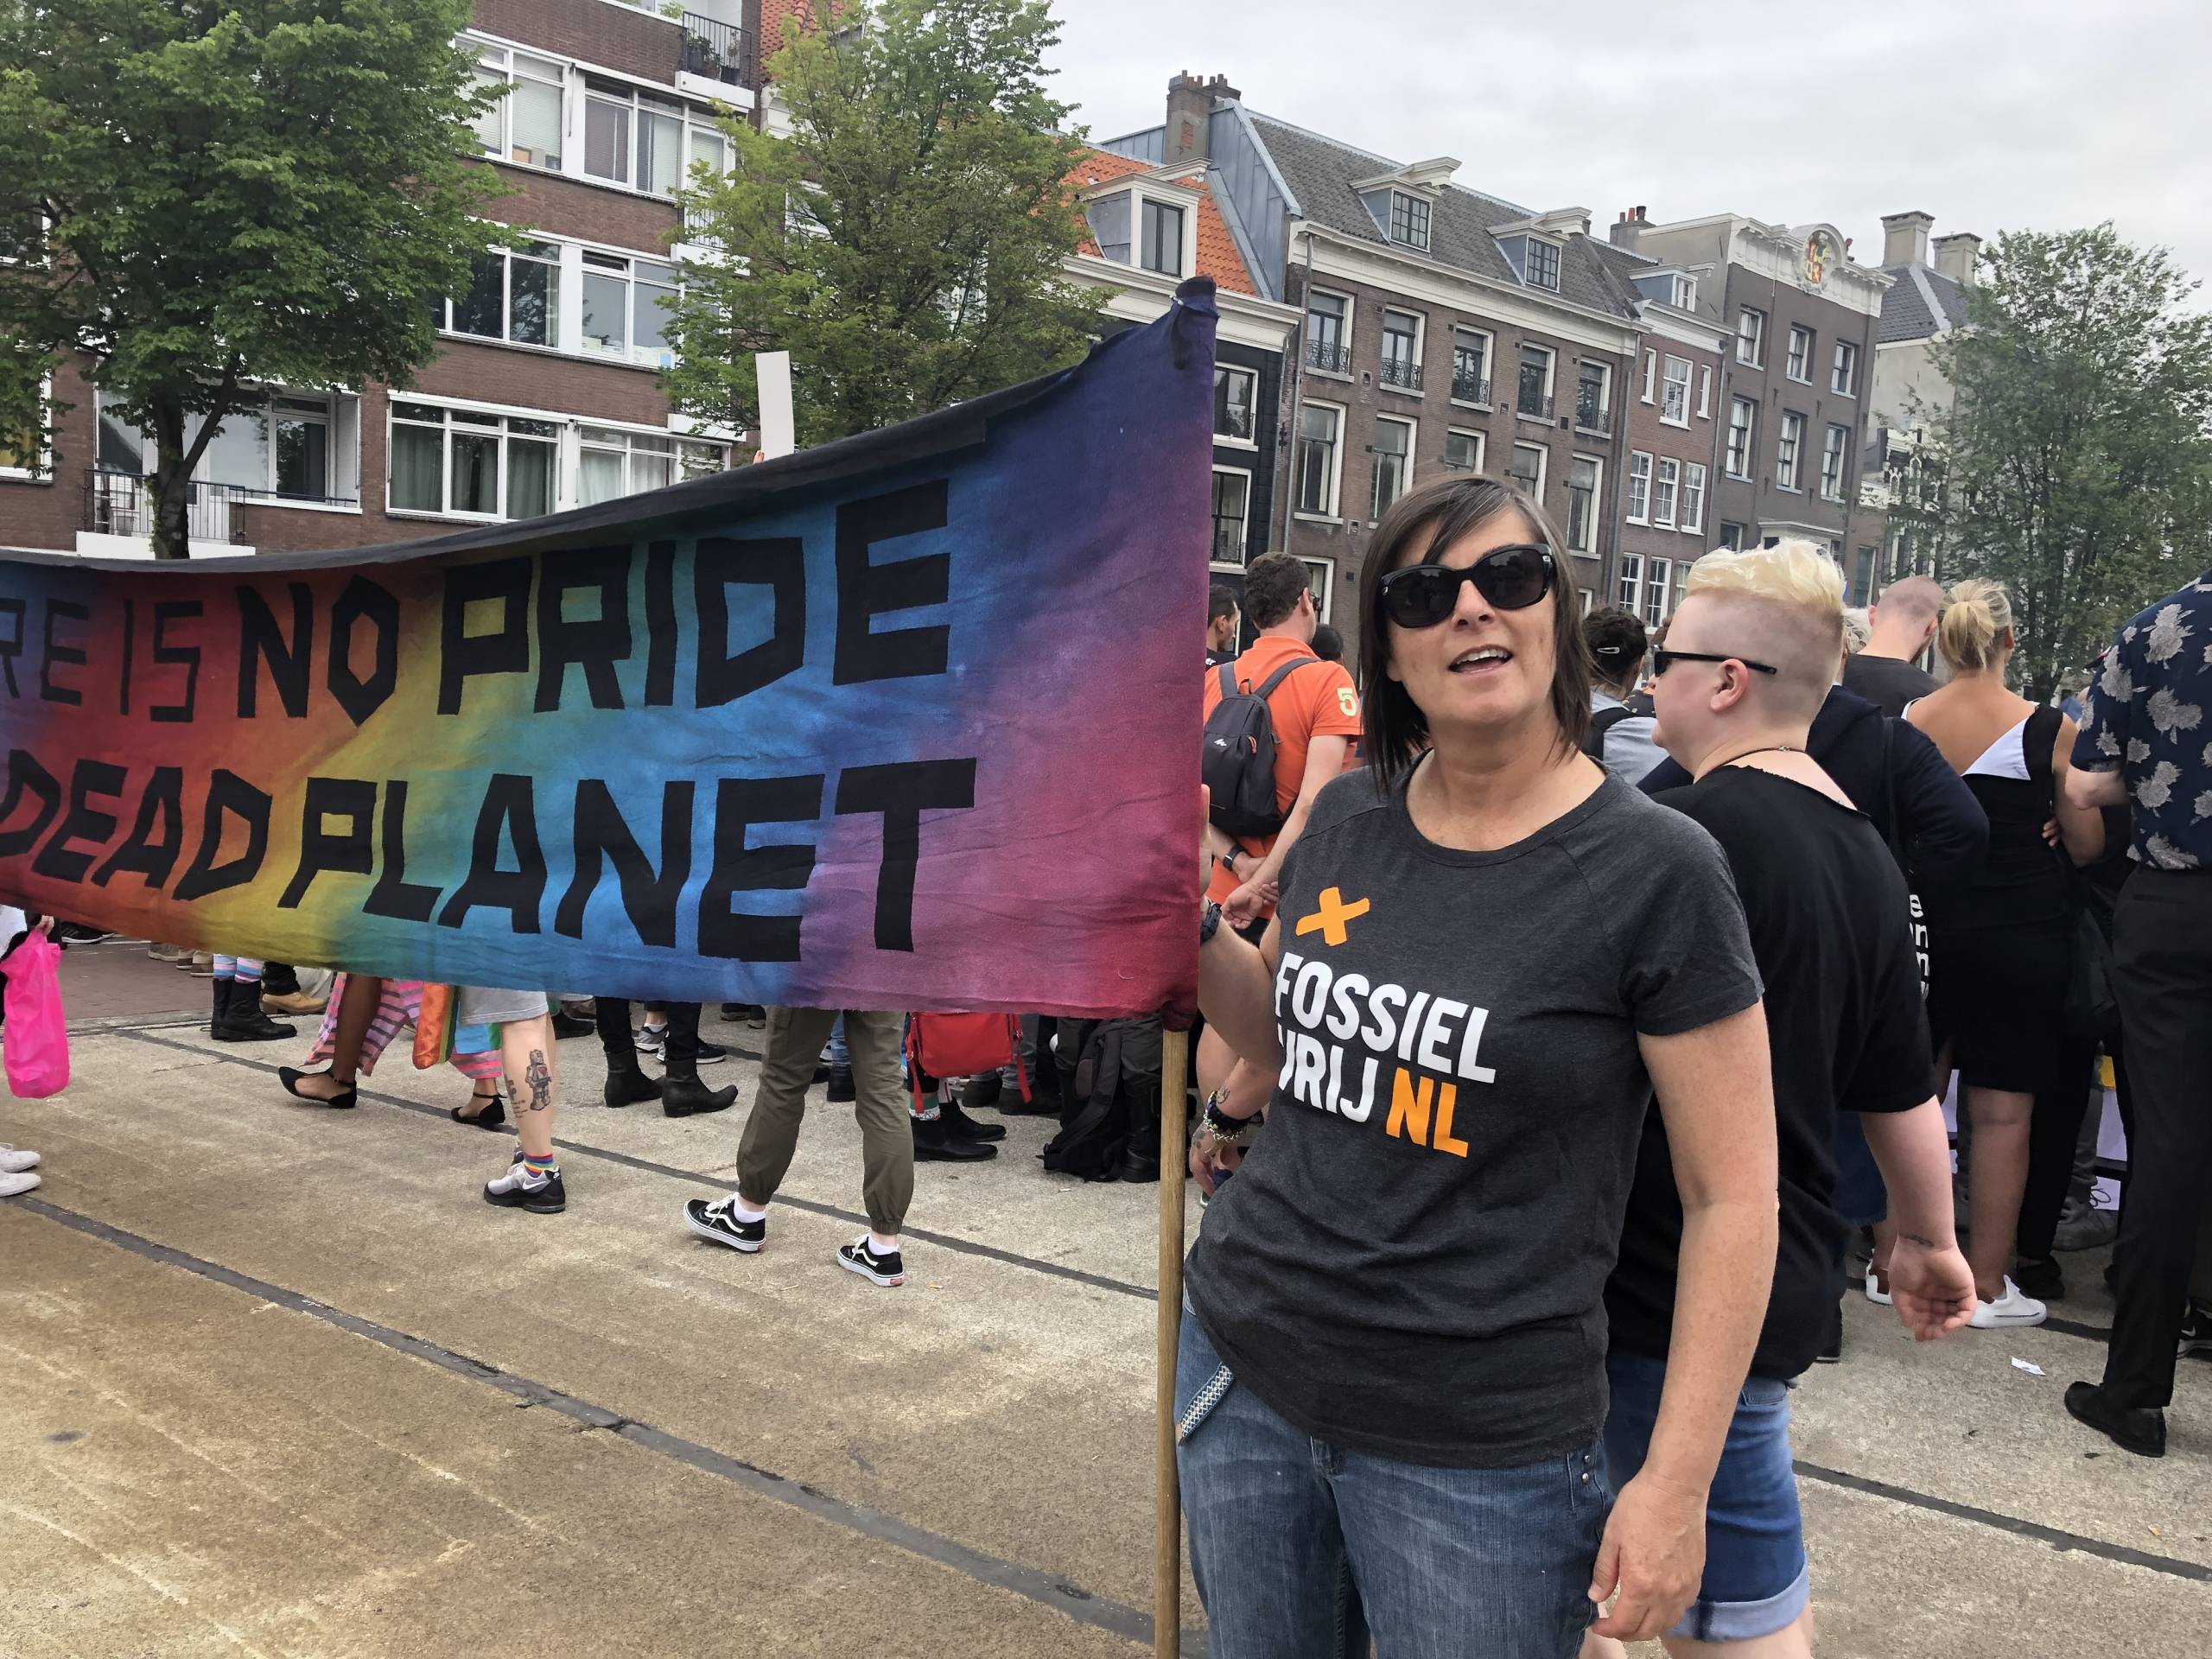 Dawn Betteridge es una activista queer y climática, tiene múltiples pasaportes y no cree realmente en las fronteras geográficas. Es Director de Estrategia y Aprendizaje Integrado en 350.org y actualmente vive en los Países Bajos.